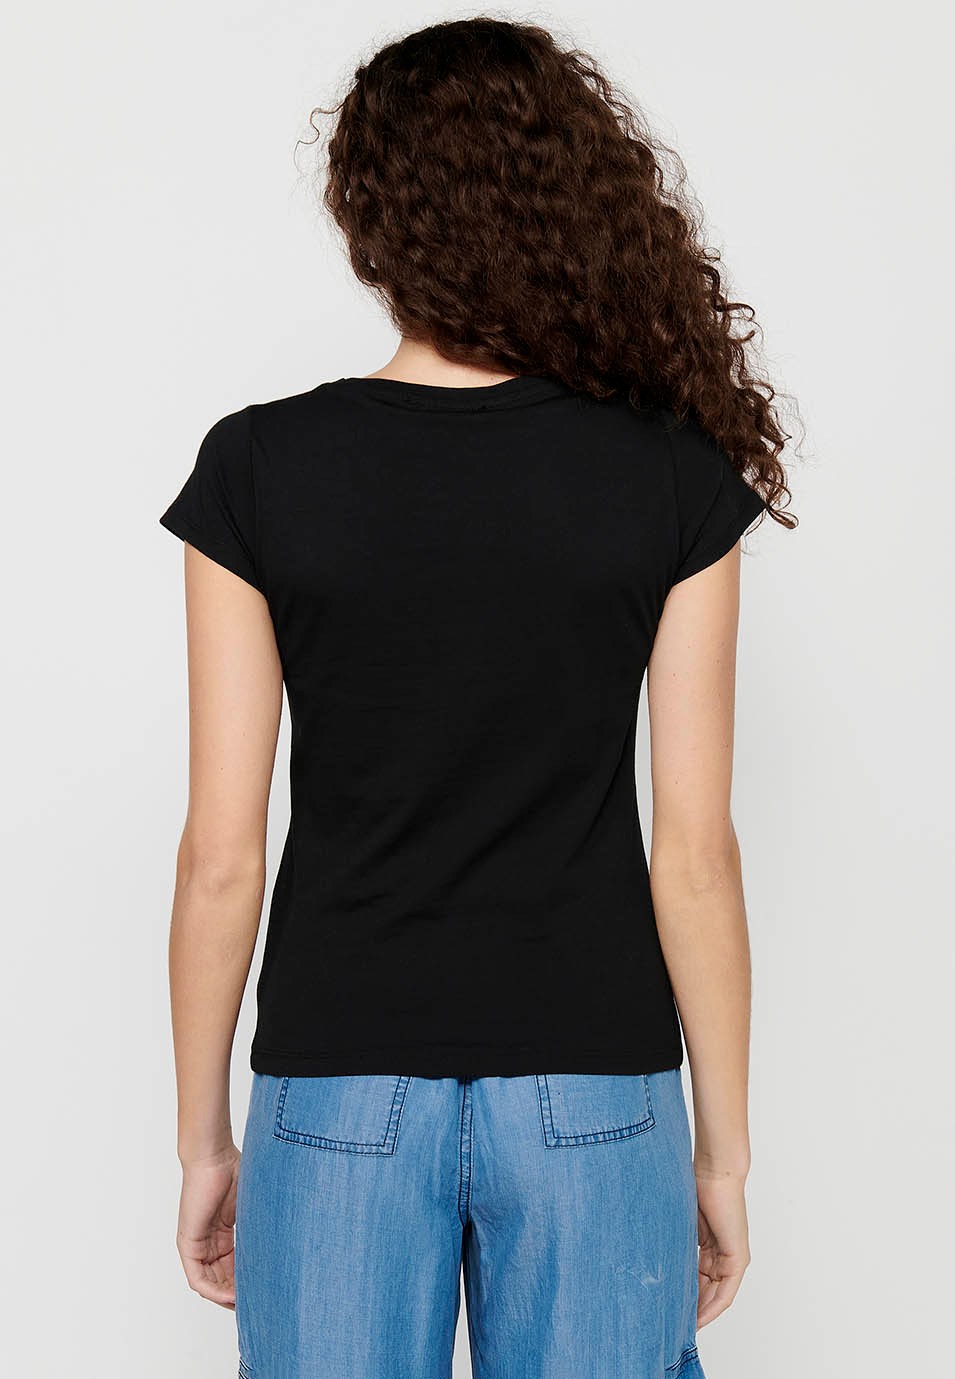 Damen-Kurzarm-T-Shirt aus Baumwolle mit Rundhalsausschnitt und schwarzem Farbaufdruck auf der Vorderseite 1